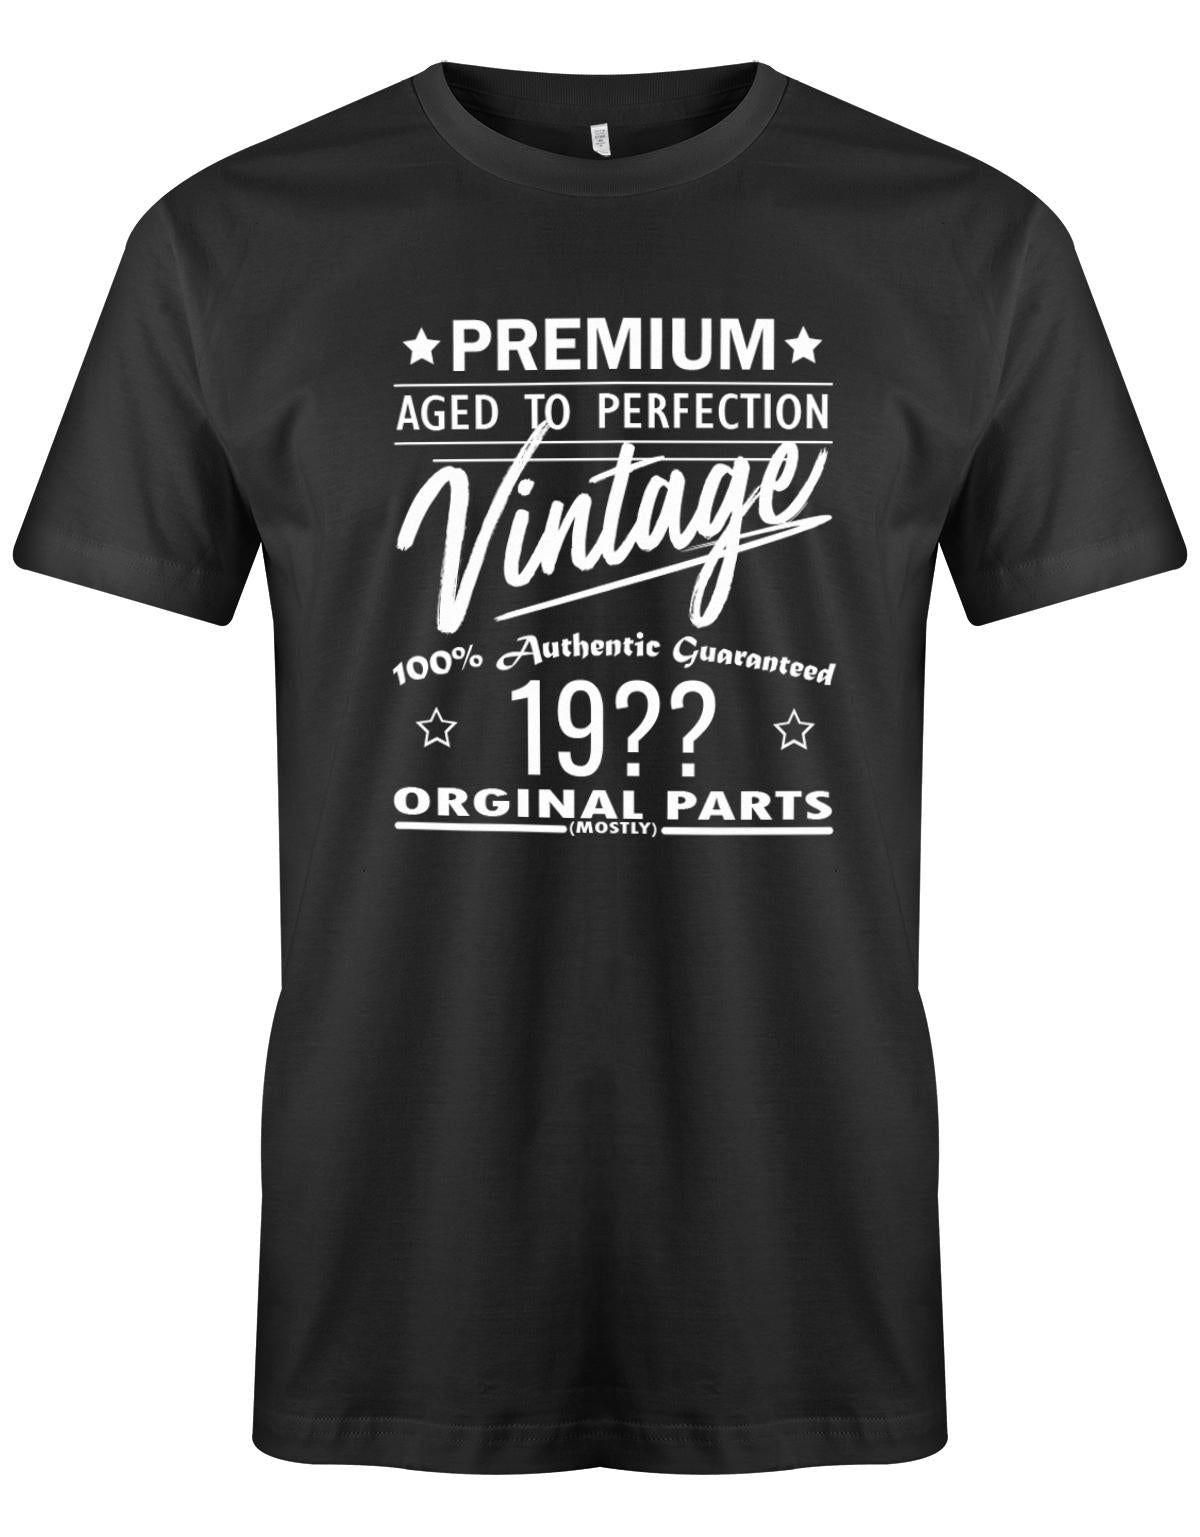 Geburtstag Tshirt für Männer Trage dein Geburtsjahr ein und mache daraus ein Unikat. Premium aged to perfection Vintage 100% Authentic Guaranteed Geburtsjahr Original Parts Mostly Schwarz